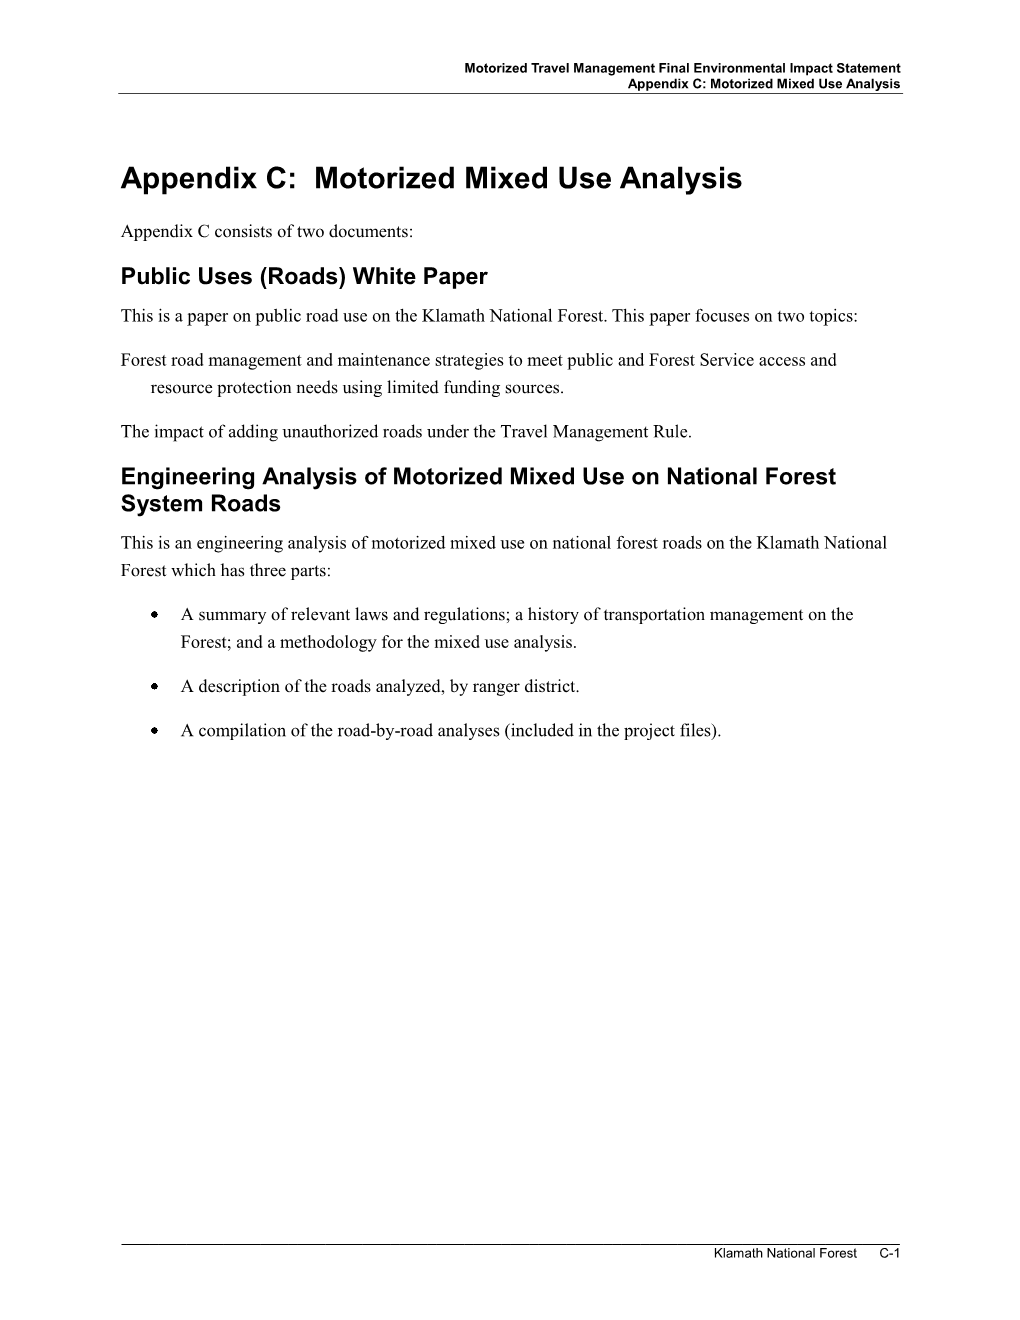 Appendix C: Motorized Mixed Use Analysis